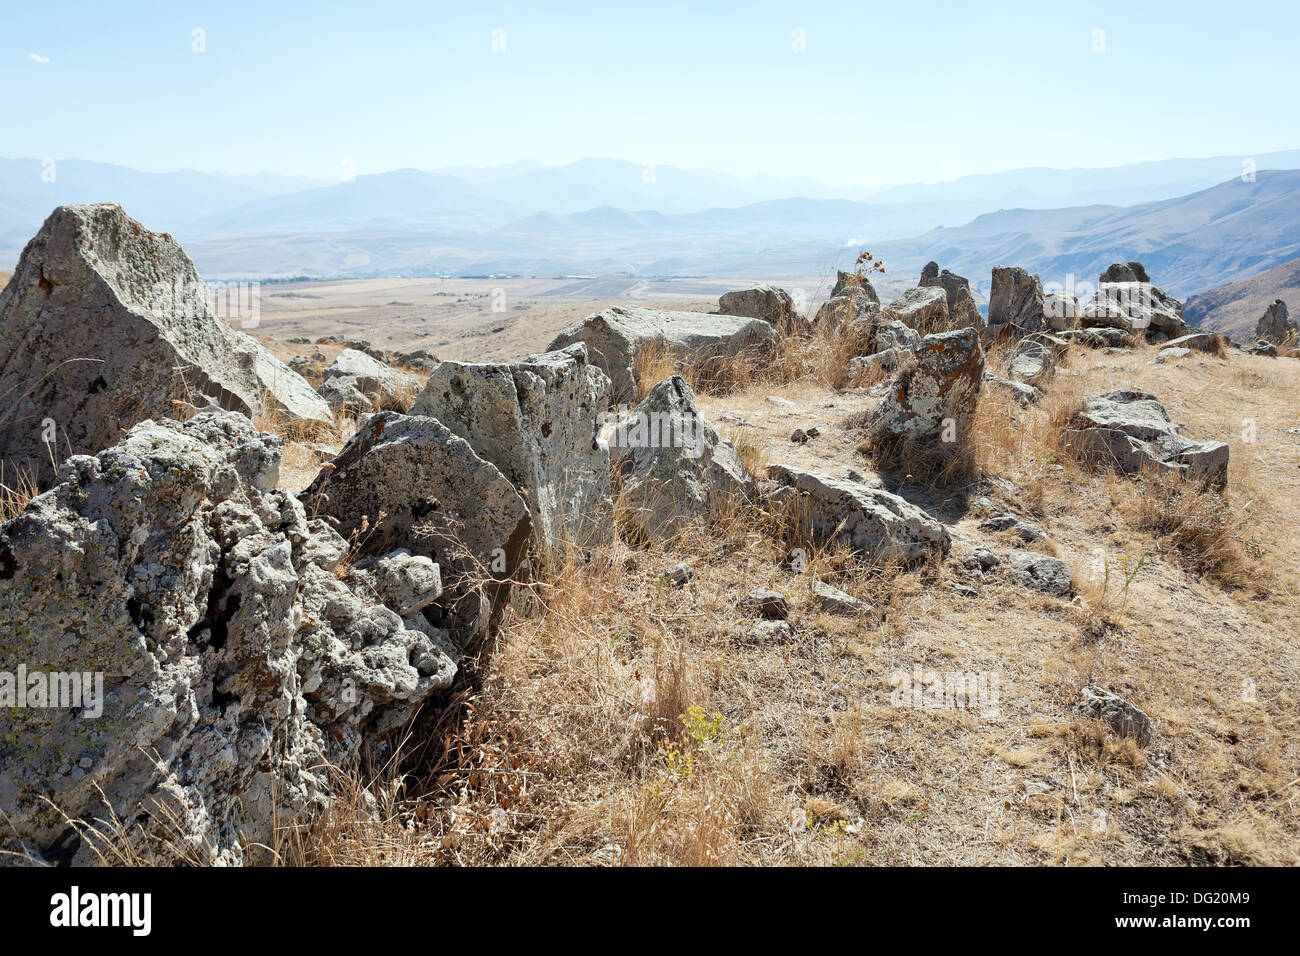 Menhire von Zorats Karer (Carahunge) - Vorgeschichte Megalith-Monument in Armenien Stockfoto